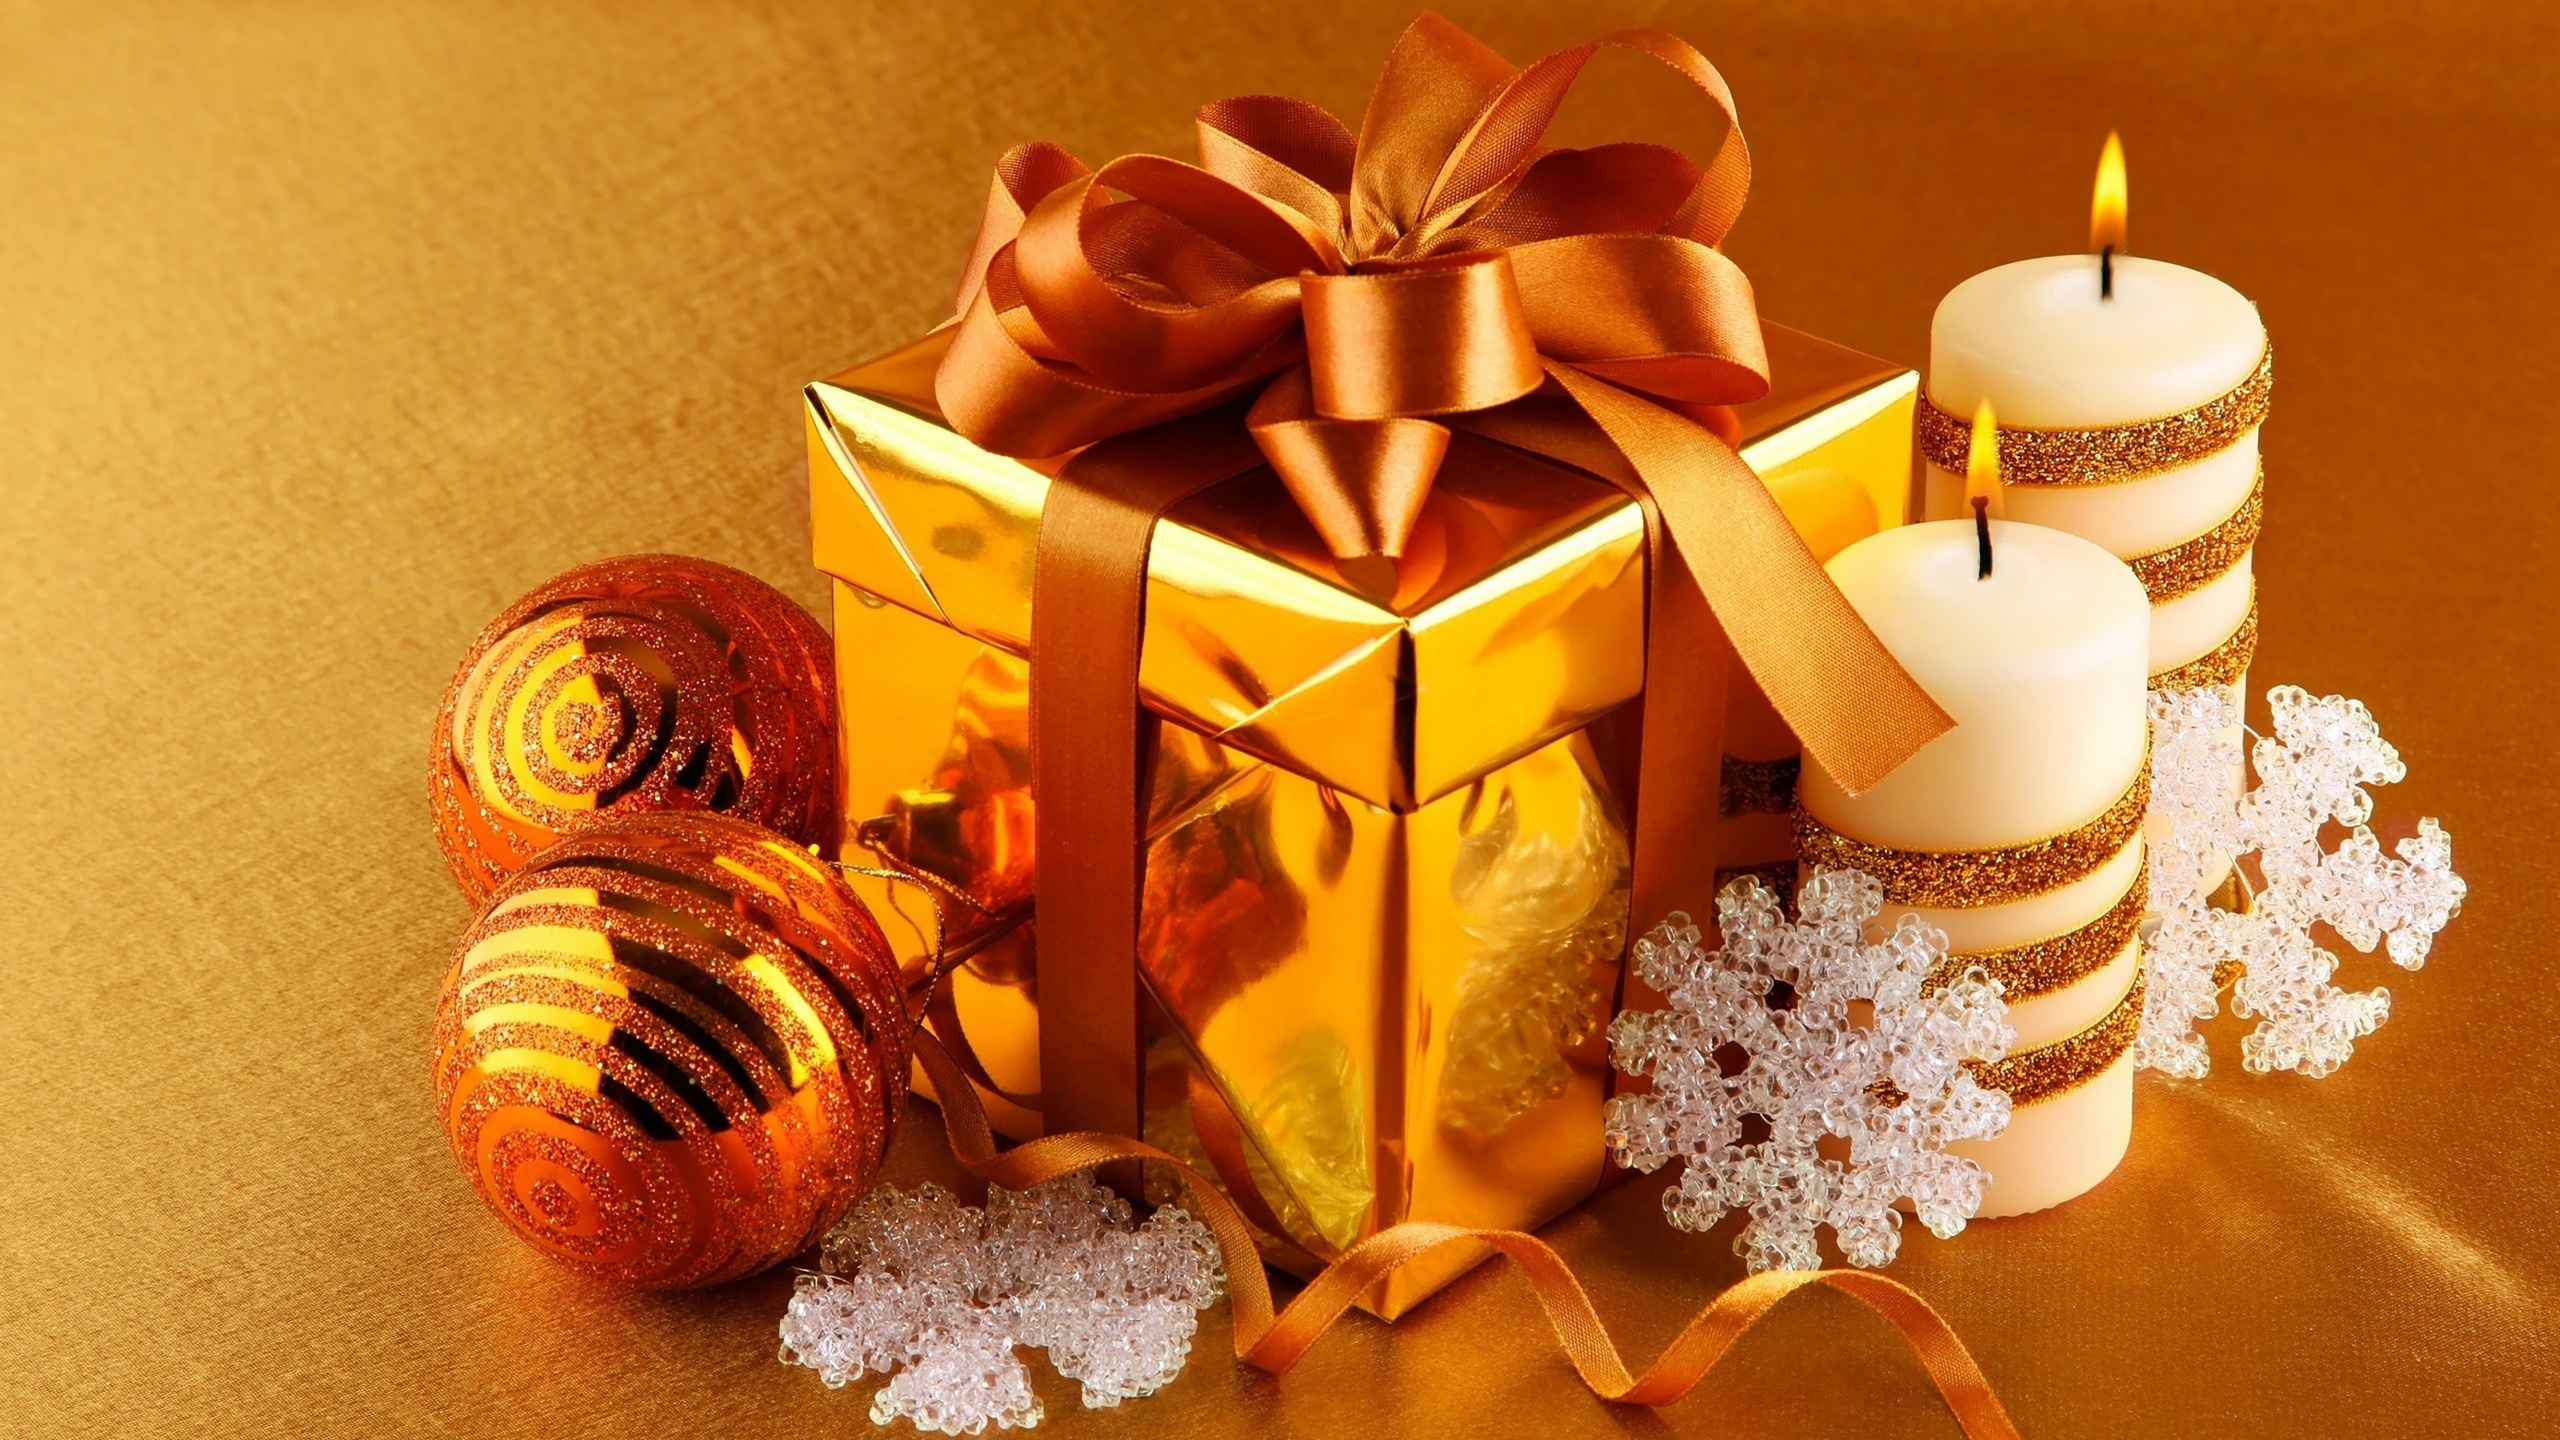 Le Jour De Noël, Ornement de Noël, Présent, Décoration de Noël, Emballage Cadeau. Wallpaper in 2560x1440 Resolution